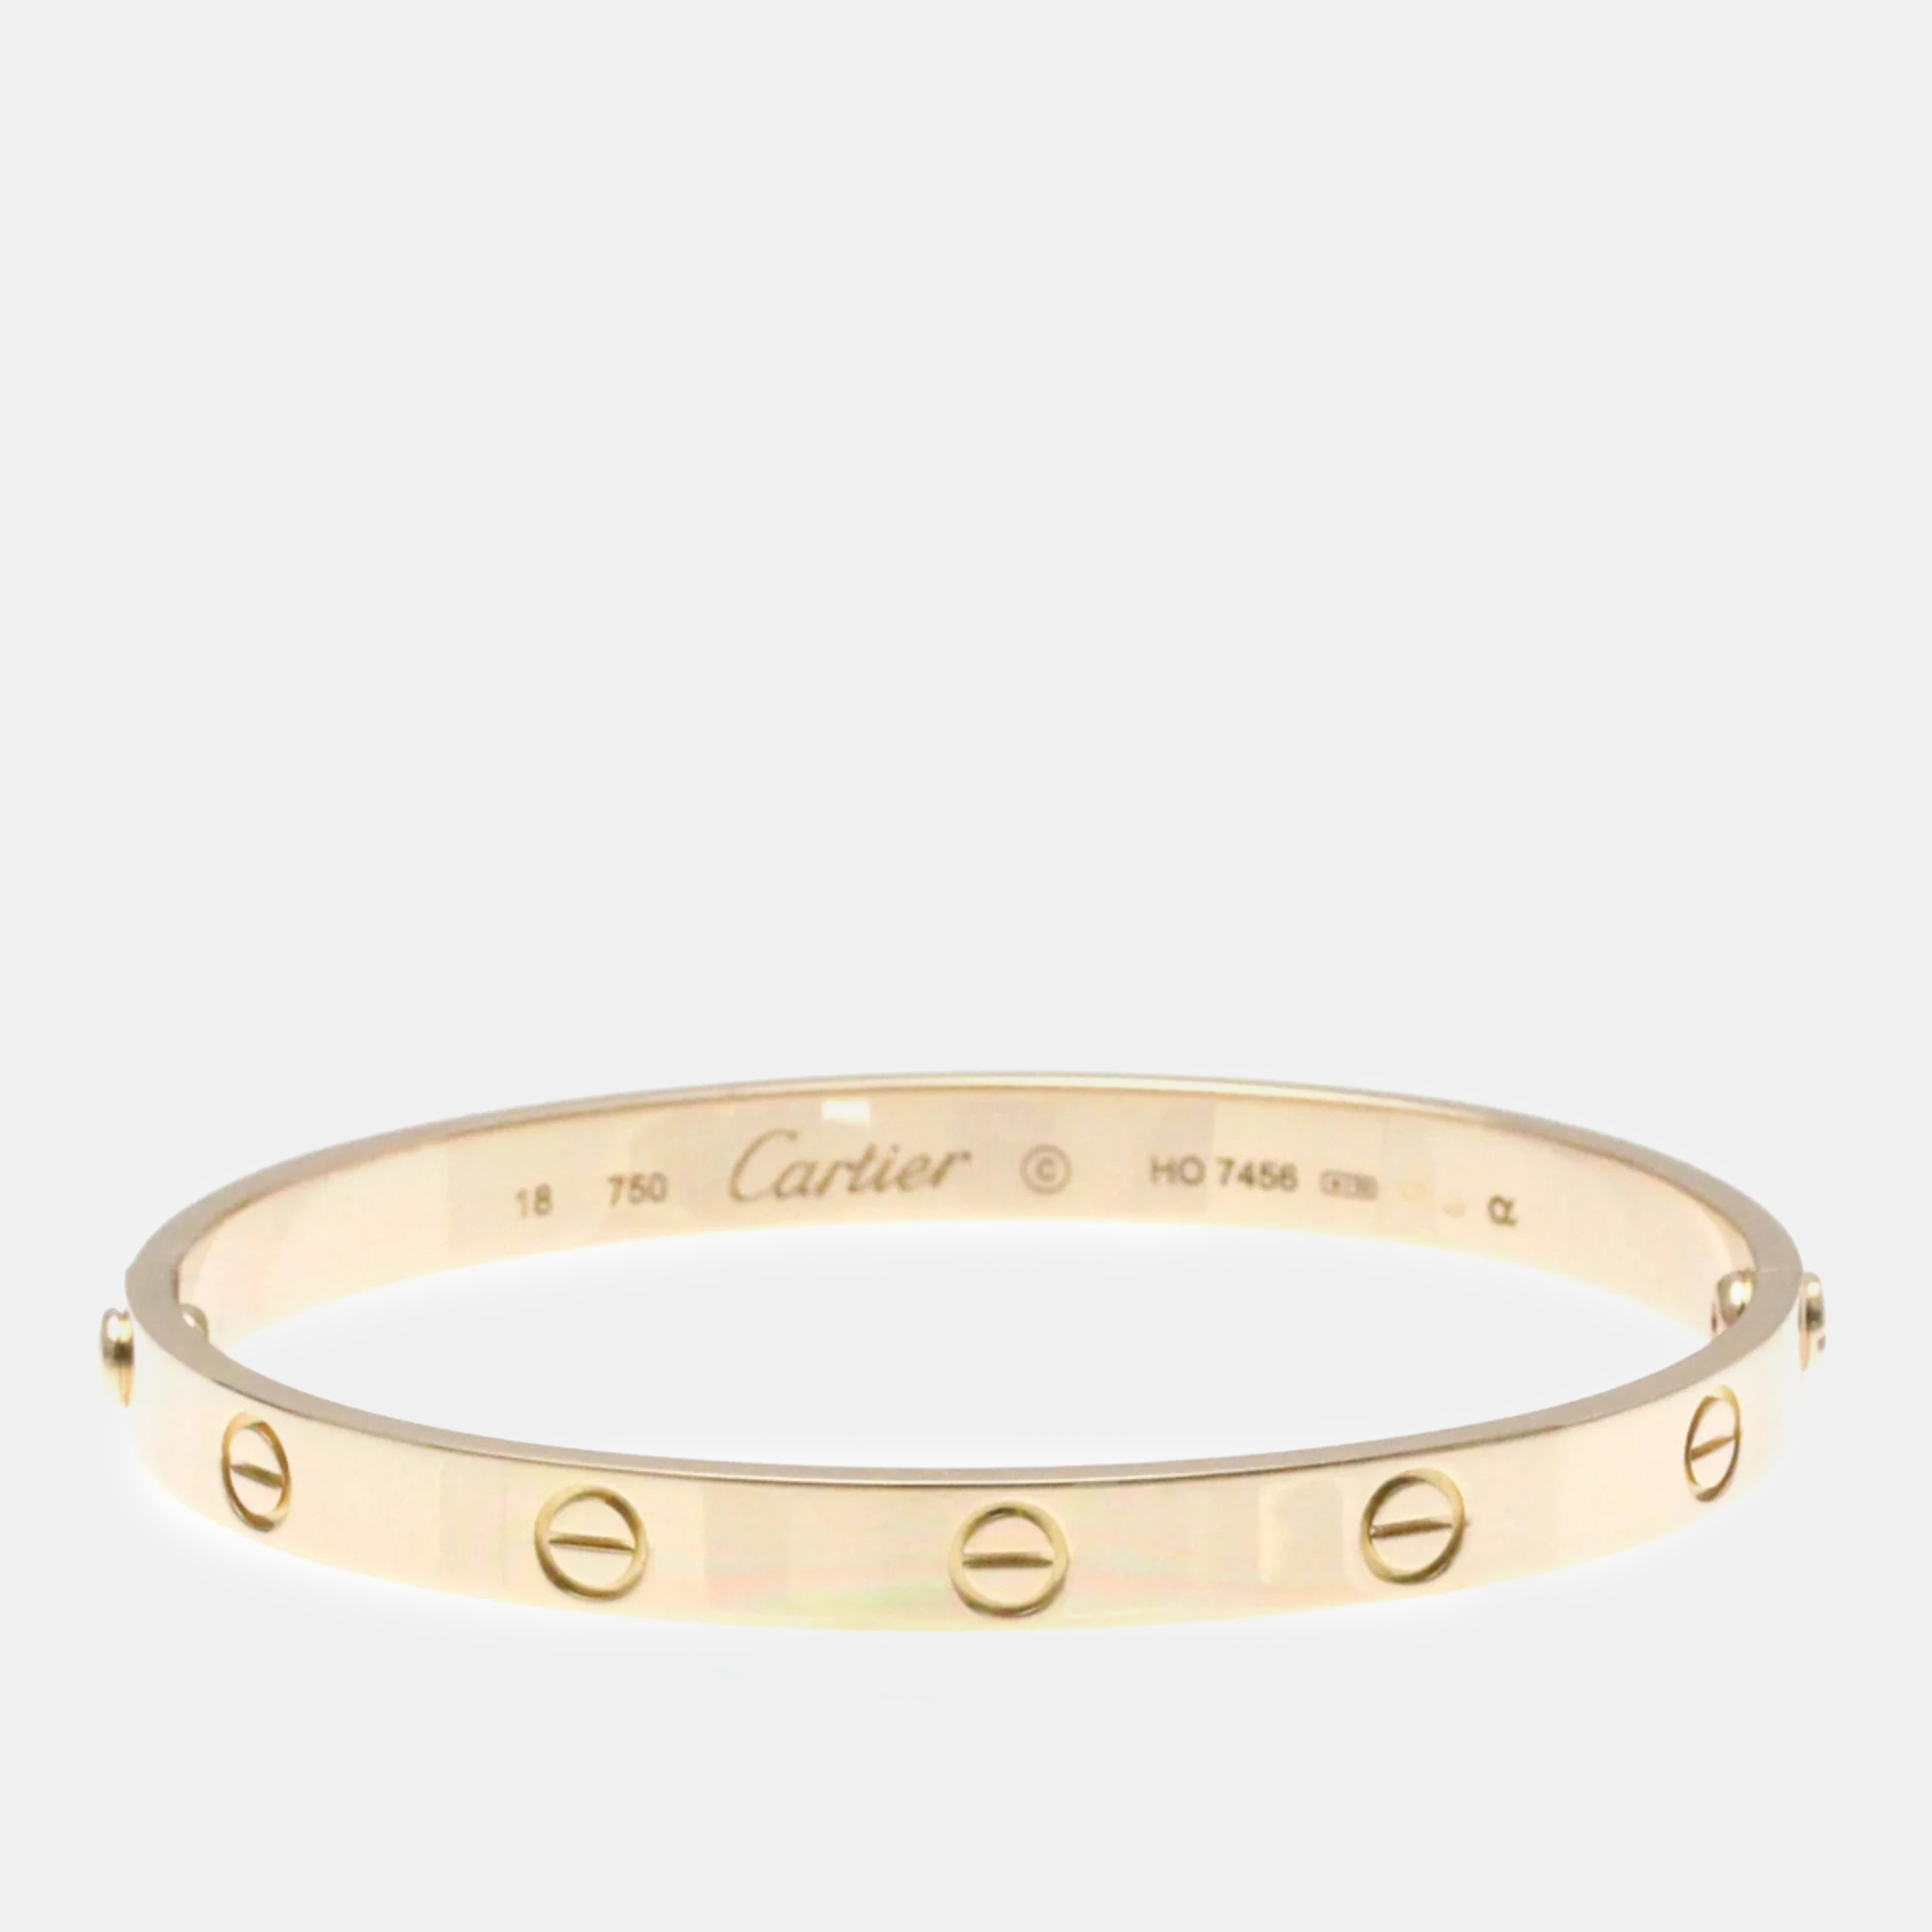 Cartier 18k rose gold love bangle bracelet